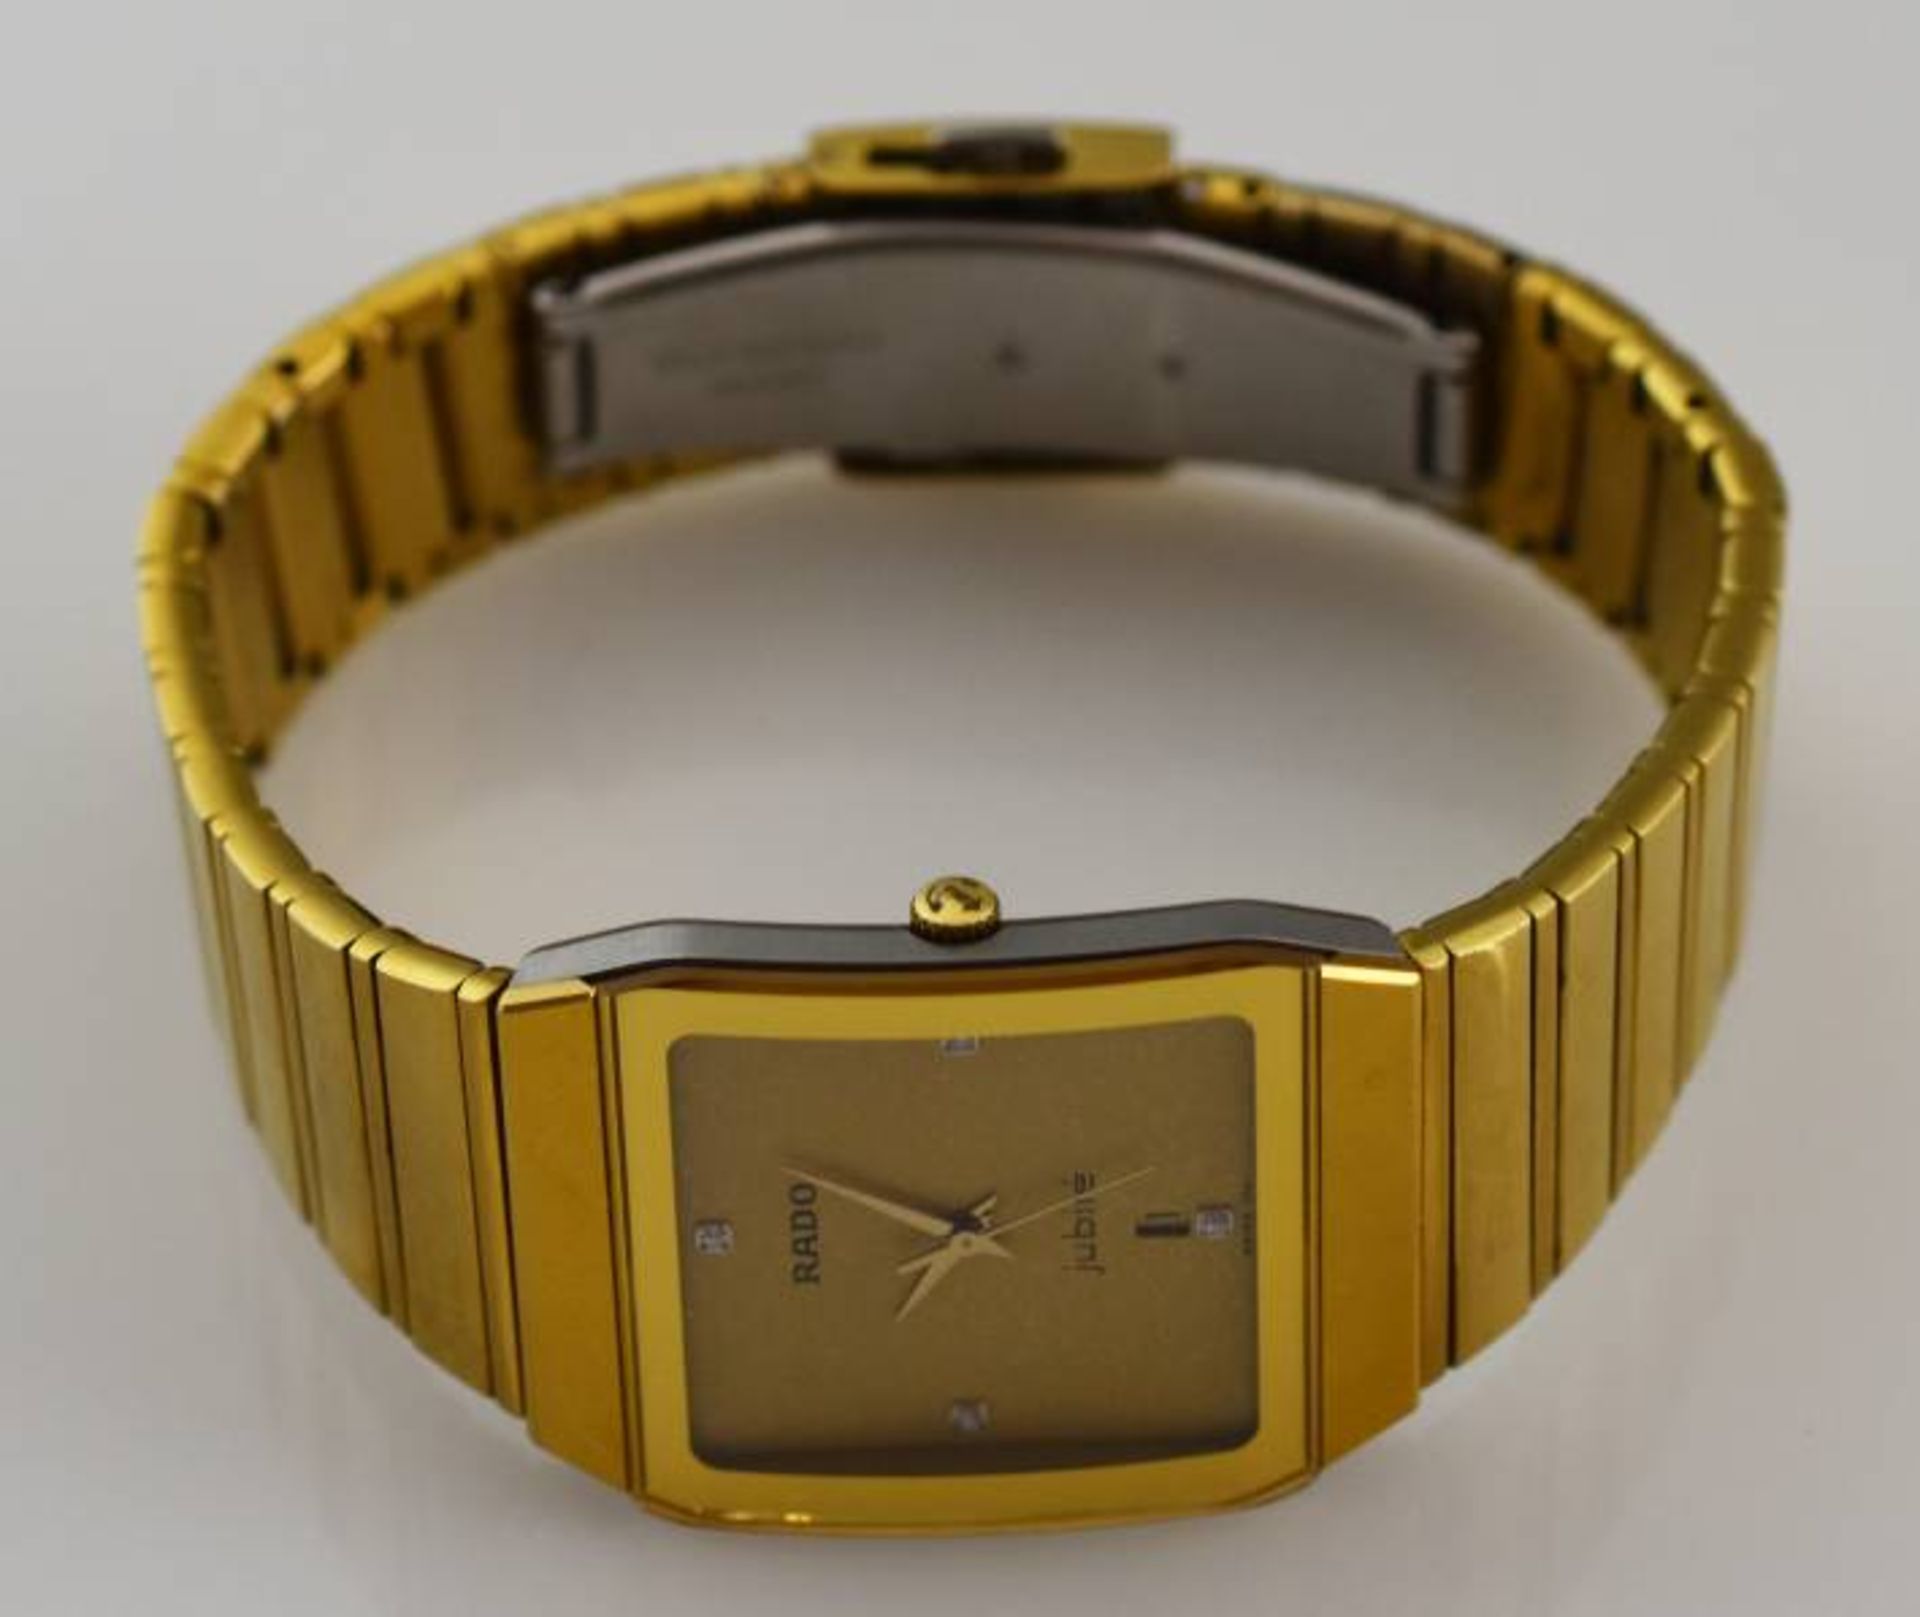 ARMBANDUHR RADO Jubilé, Quartz, rechteckiges Gehäuse mit passendem Armband, vergoldet, - Bild 3 aus 3